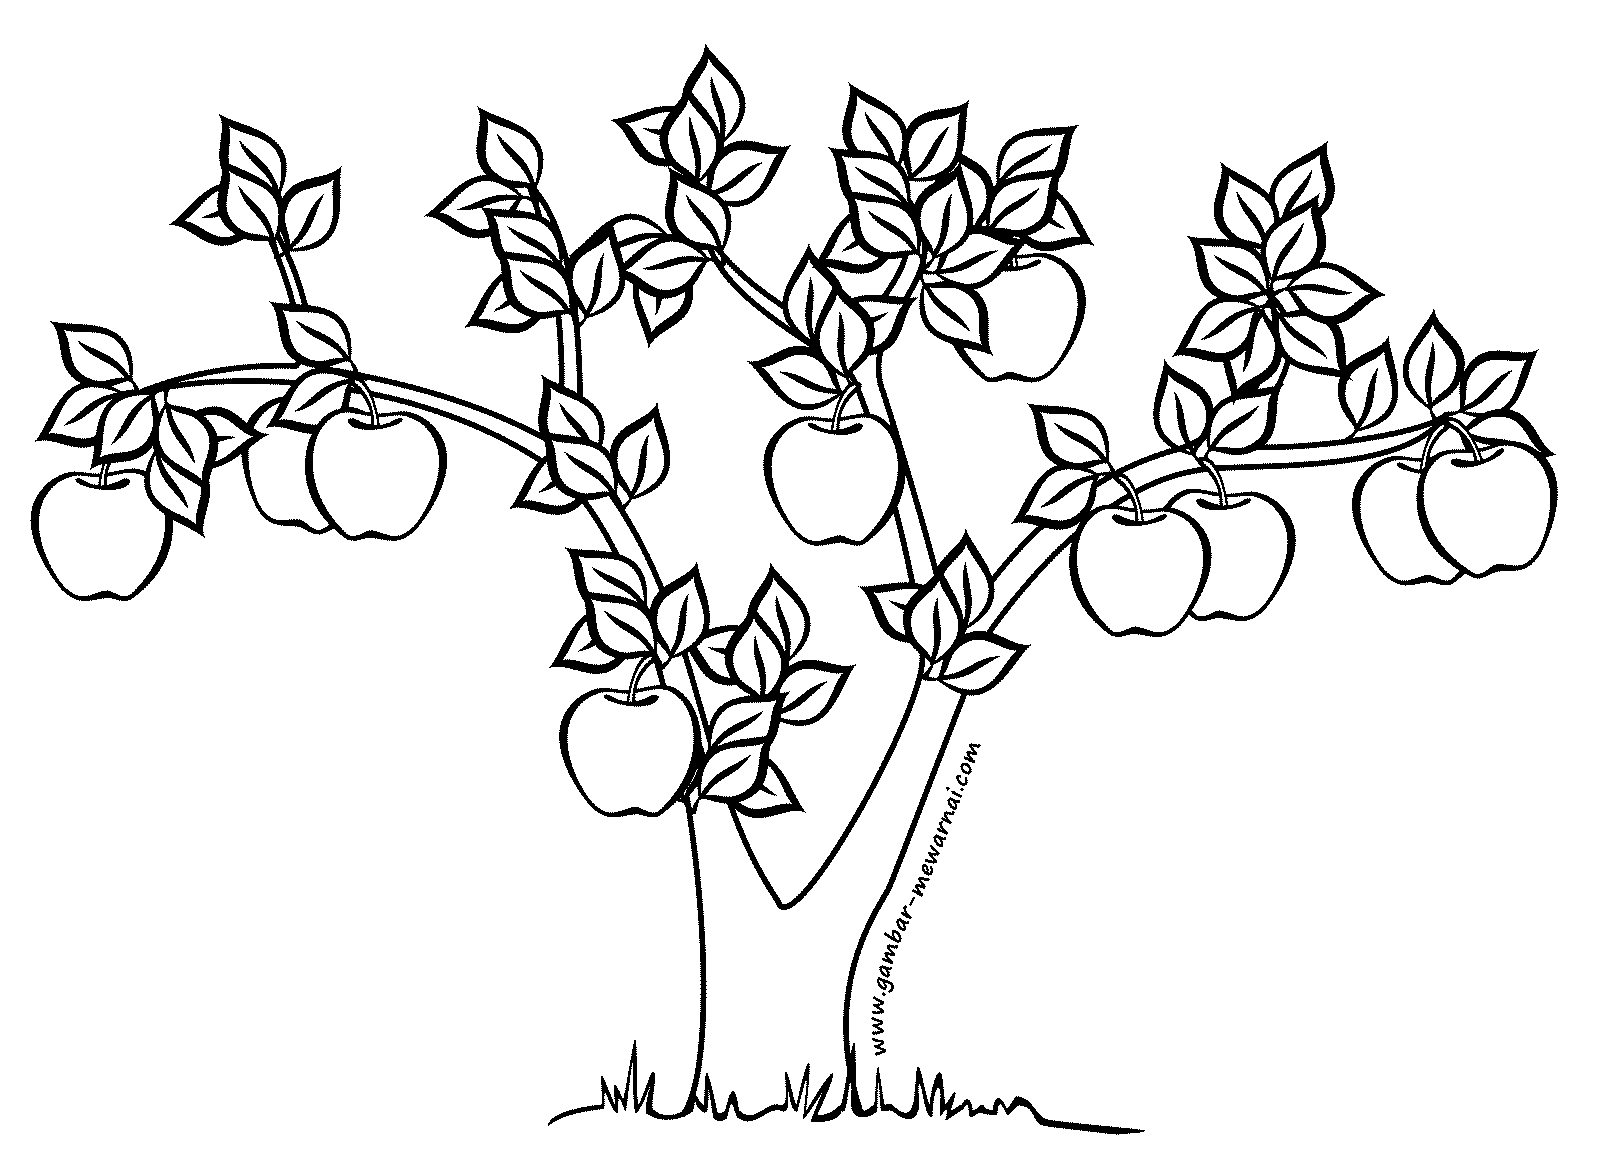 Kumpulan Gambar Pohon Apel Kartun Duinia Kartun